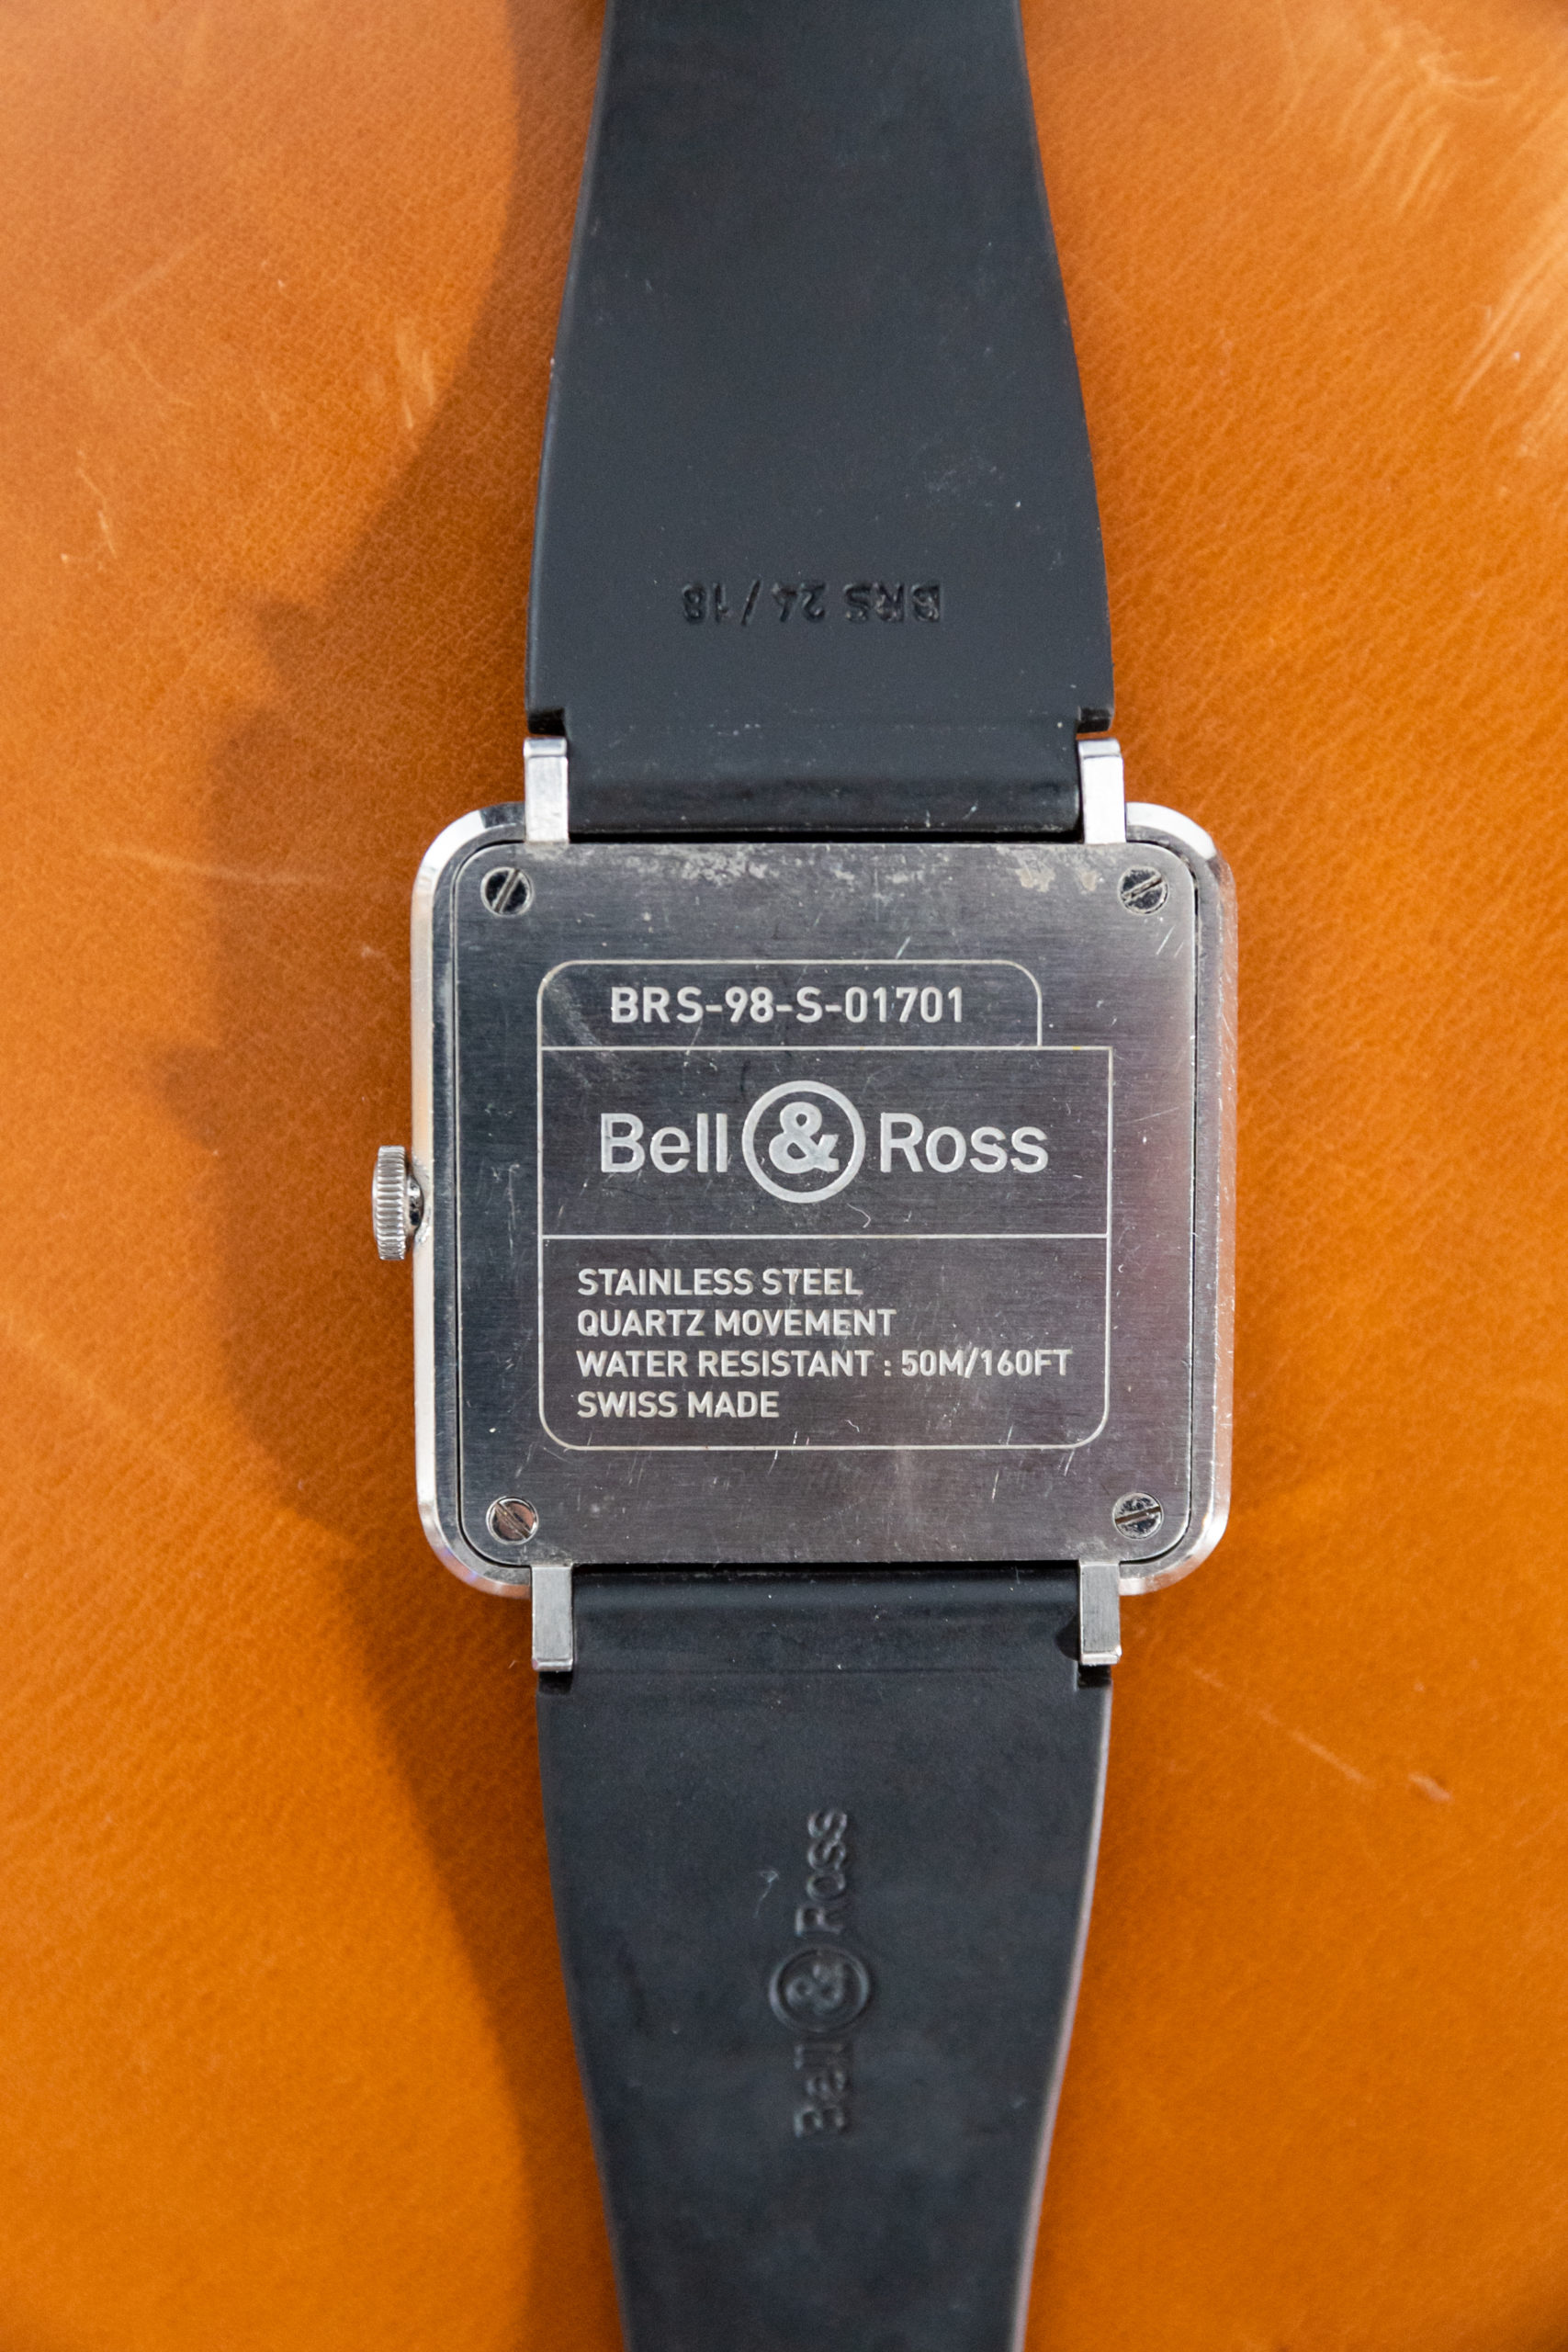 Montre-bell-and-ross-aurore-morisse-affaire-conclue-antiquaire-montre-collection-horlogerie-luxe3